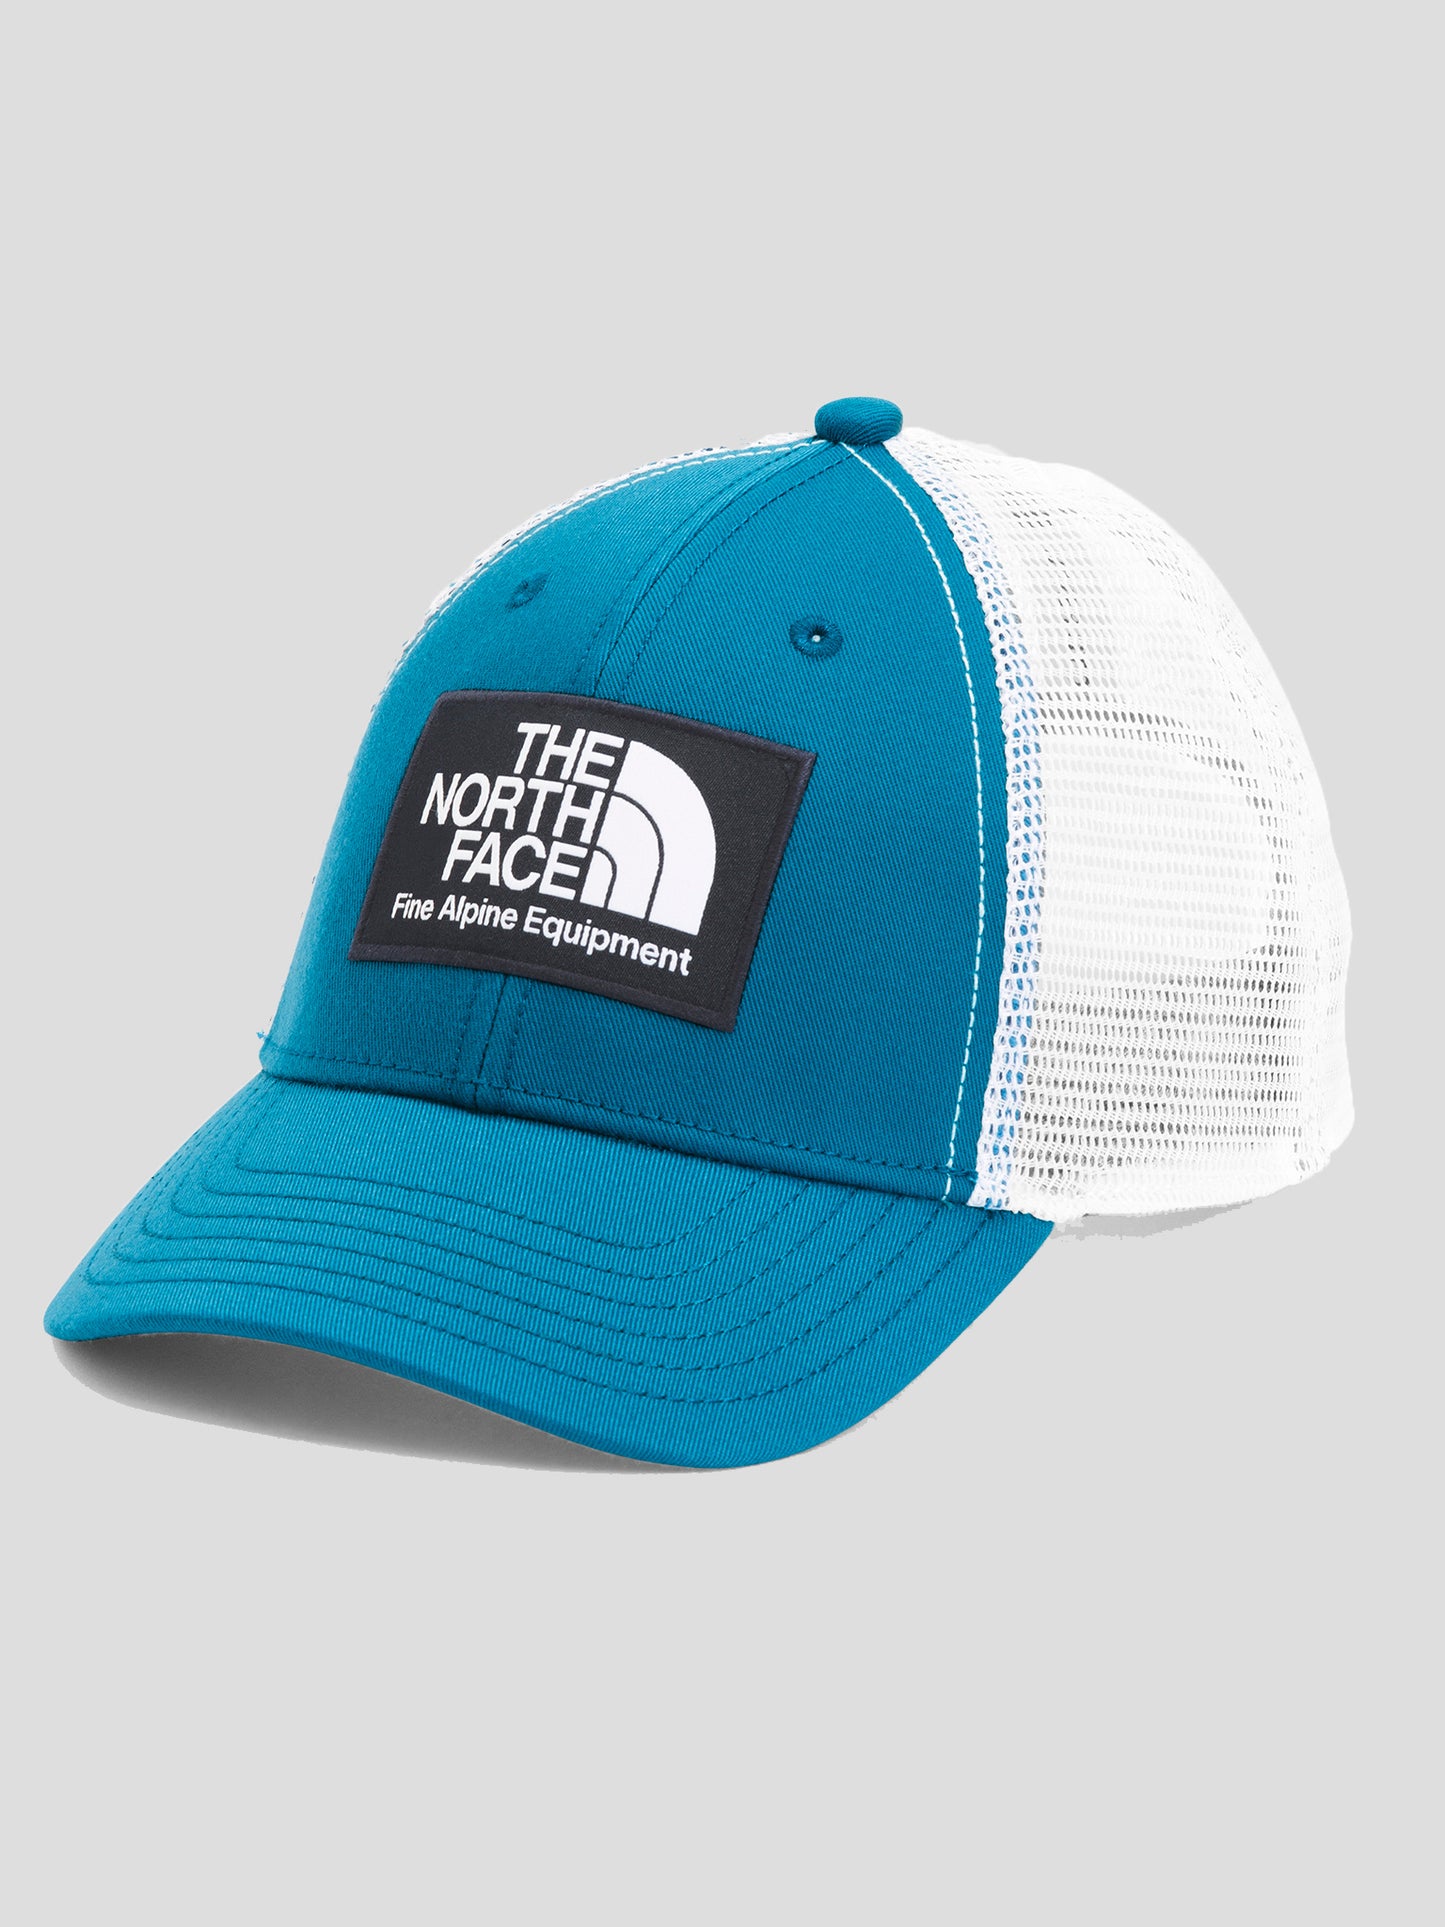 The North Face Kids' Mudder Trucker Hat